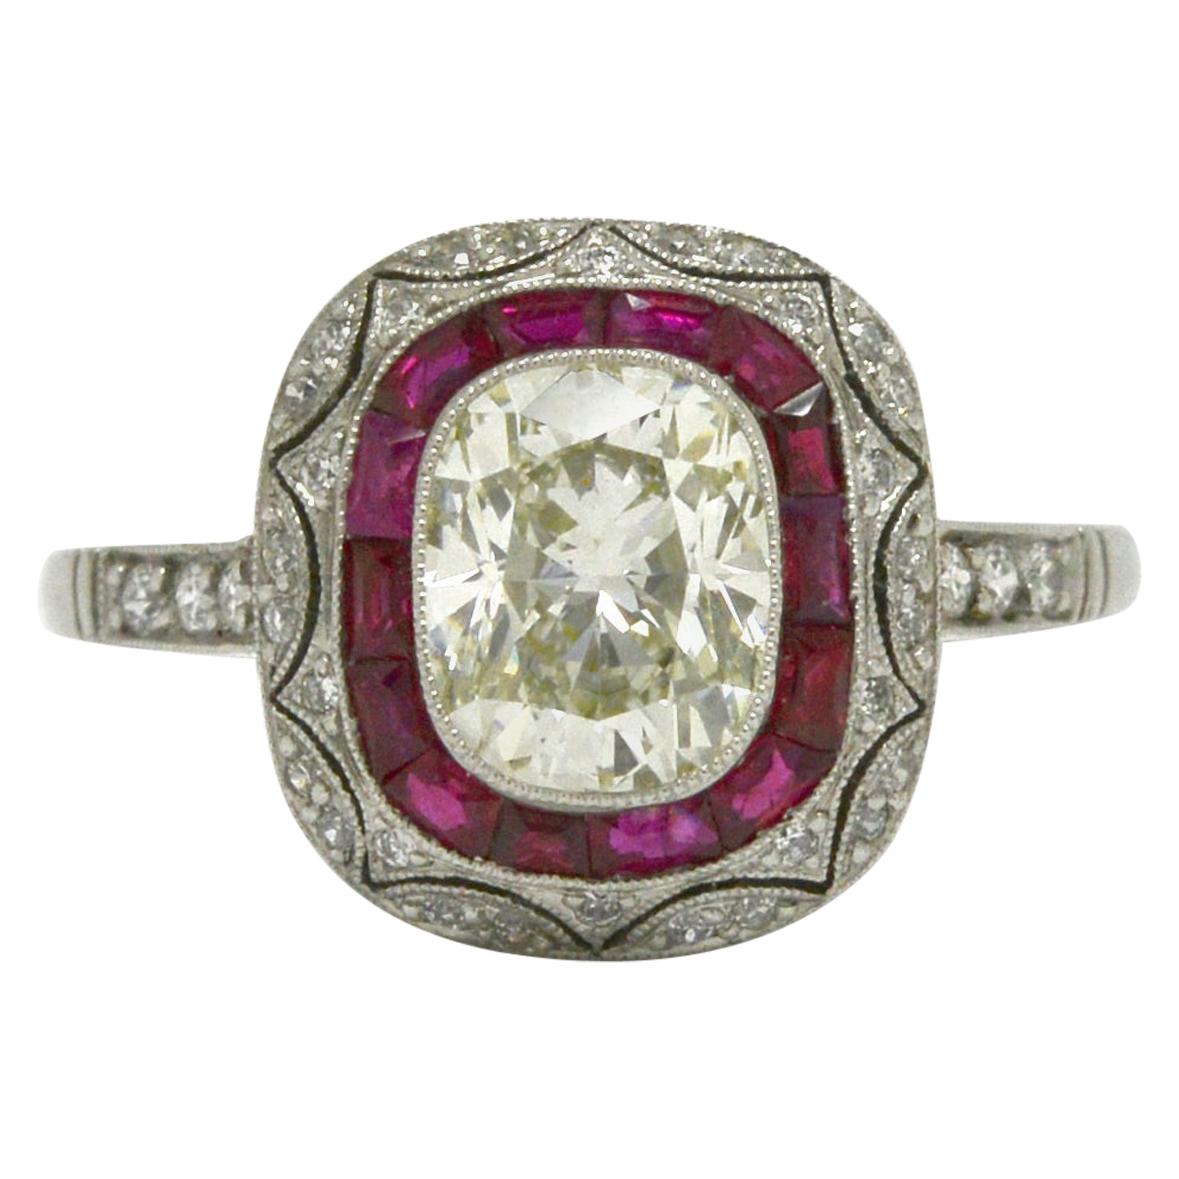 Art Deco Inspired Cushion Diamond Engagement Ring Ruby Halo 2.5 Carat Bezel Set